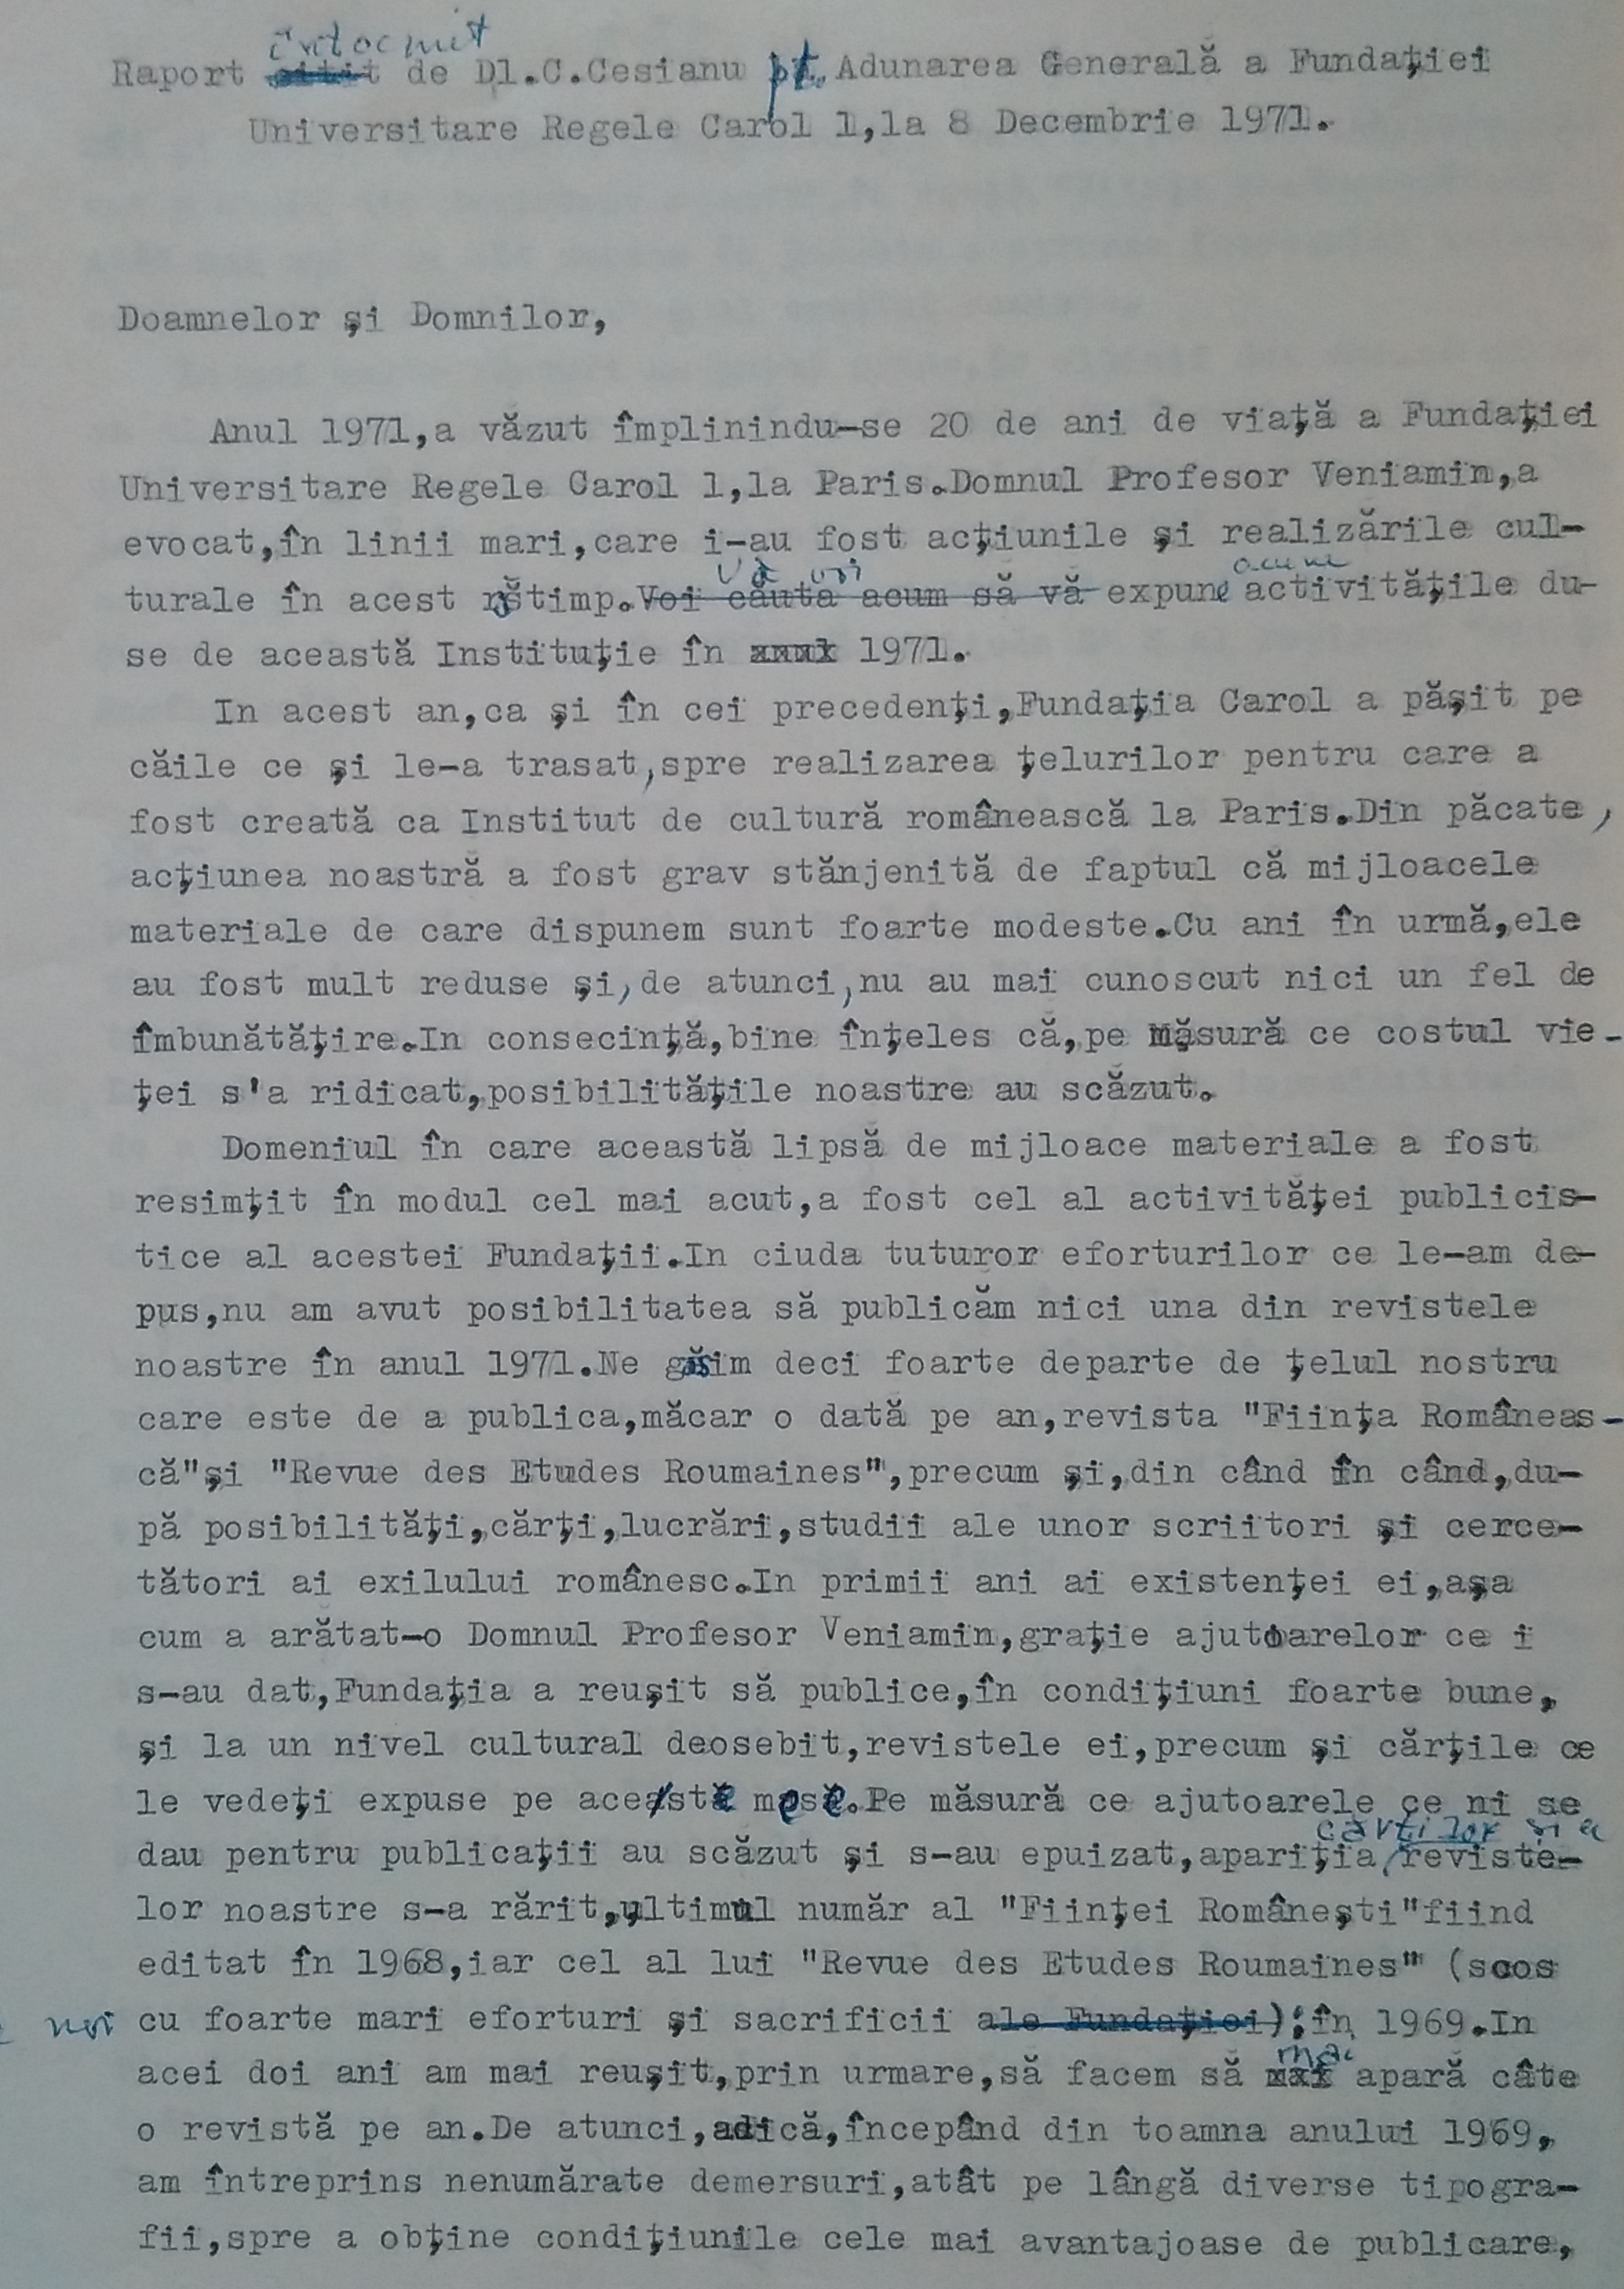 Raport întocmit de Constantin Cesianu pentru Adunarea Generală a Fundației Universitare Regale Carol I, Pris, 1971